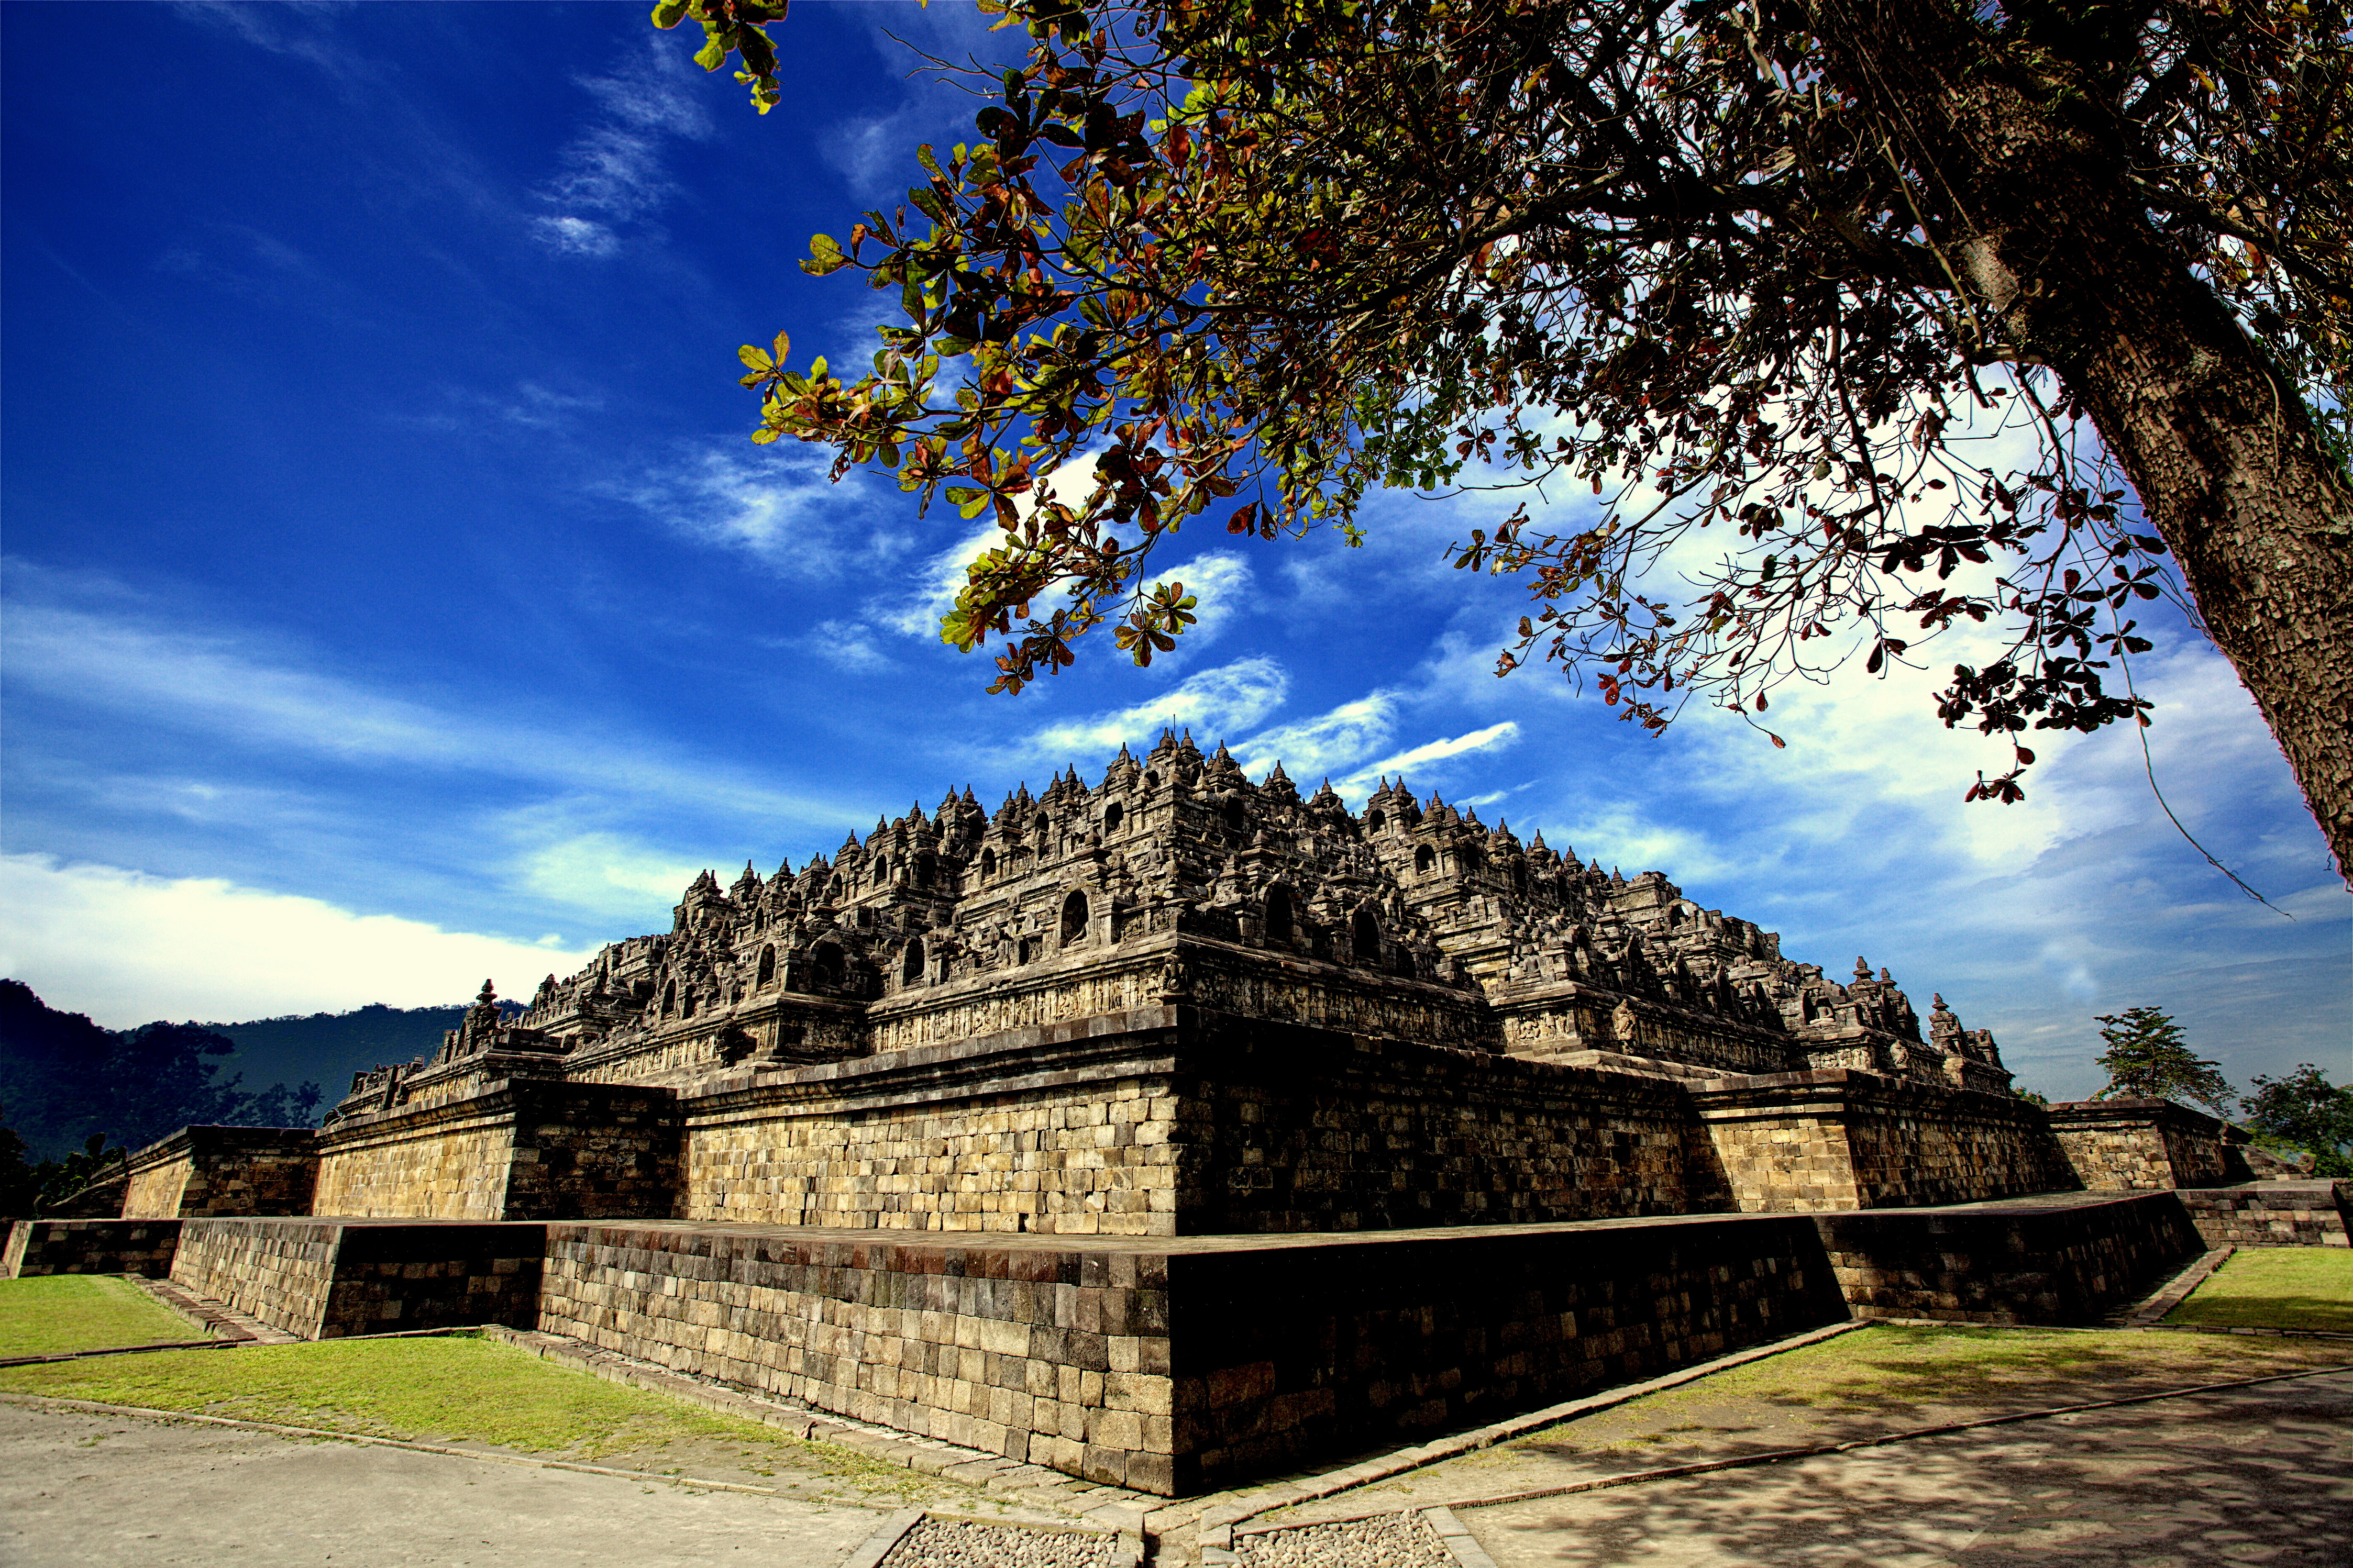 Taman Wisata Borobudur